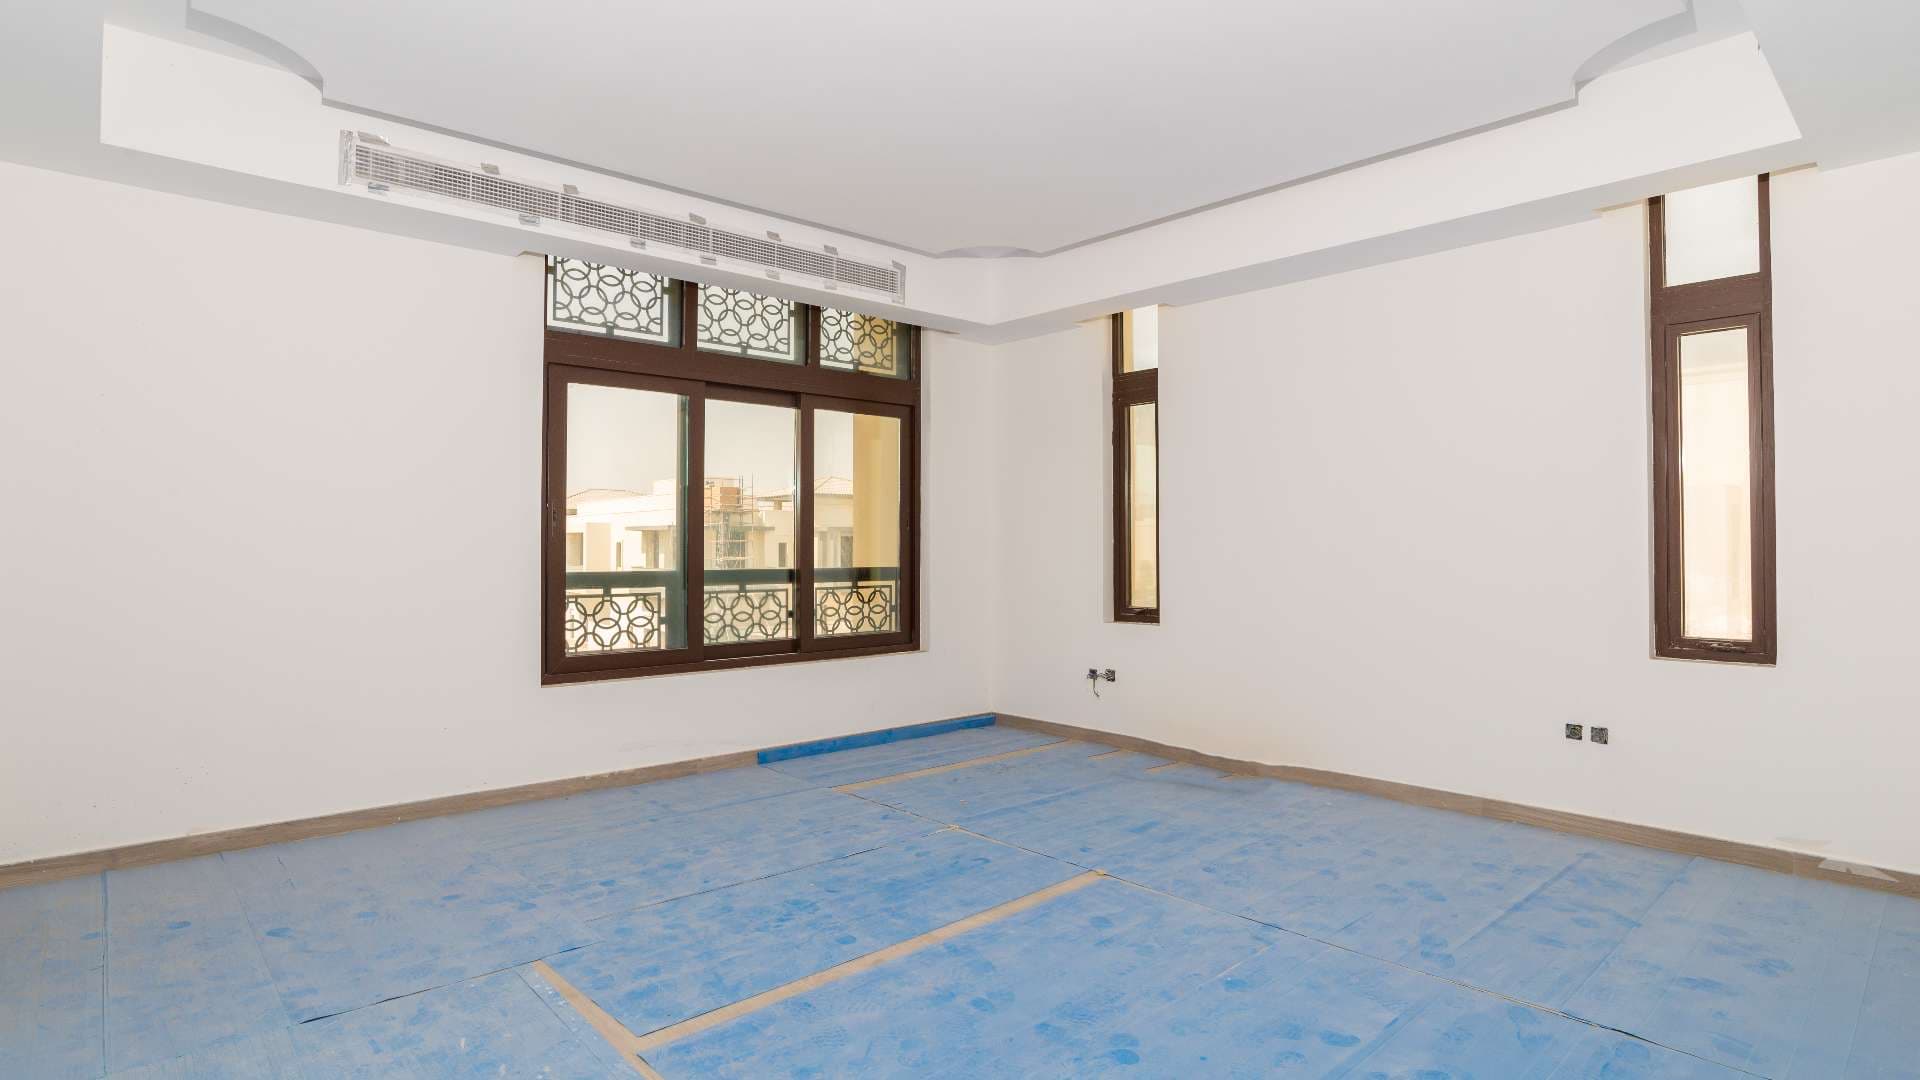  Bedroom Villa For Sale Dubai Hills View Lp08475 2b00d9db6f2a4000.jpg